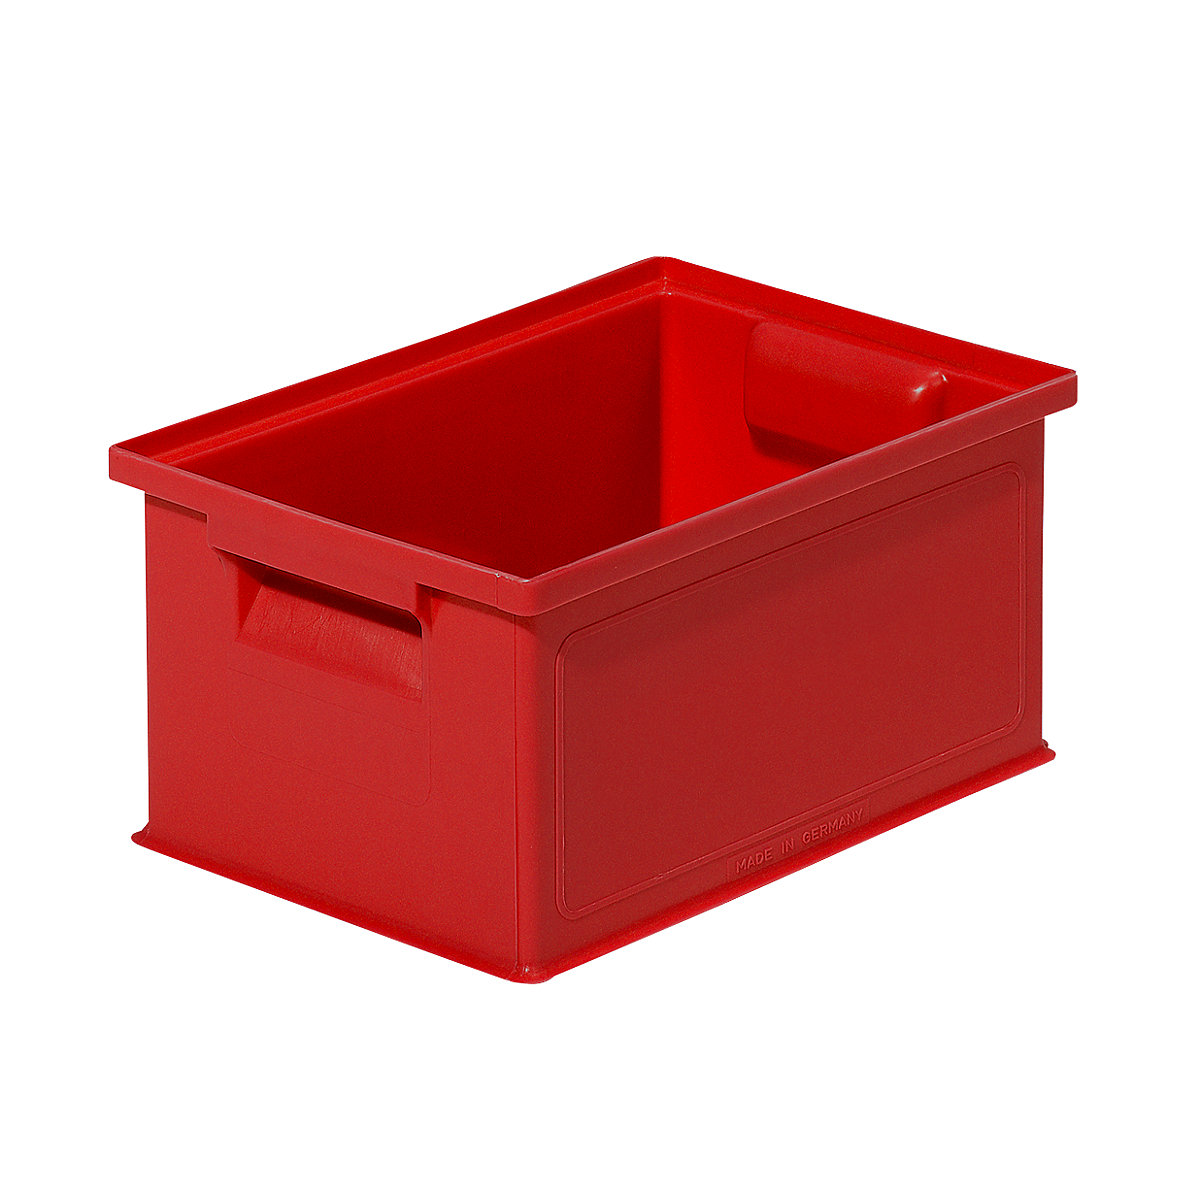 Caixa de transporte empilhável, CxLxA 310 x 210 x 145 mm, cor vermelha, embalagem com 20 unidades-4